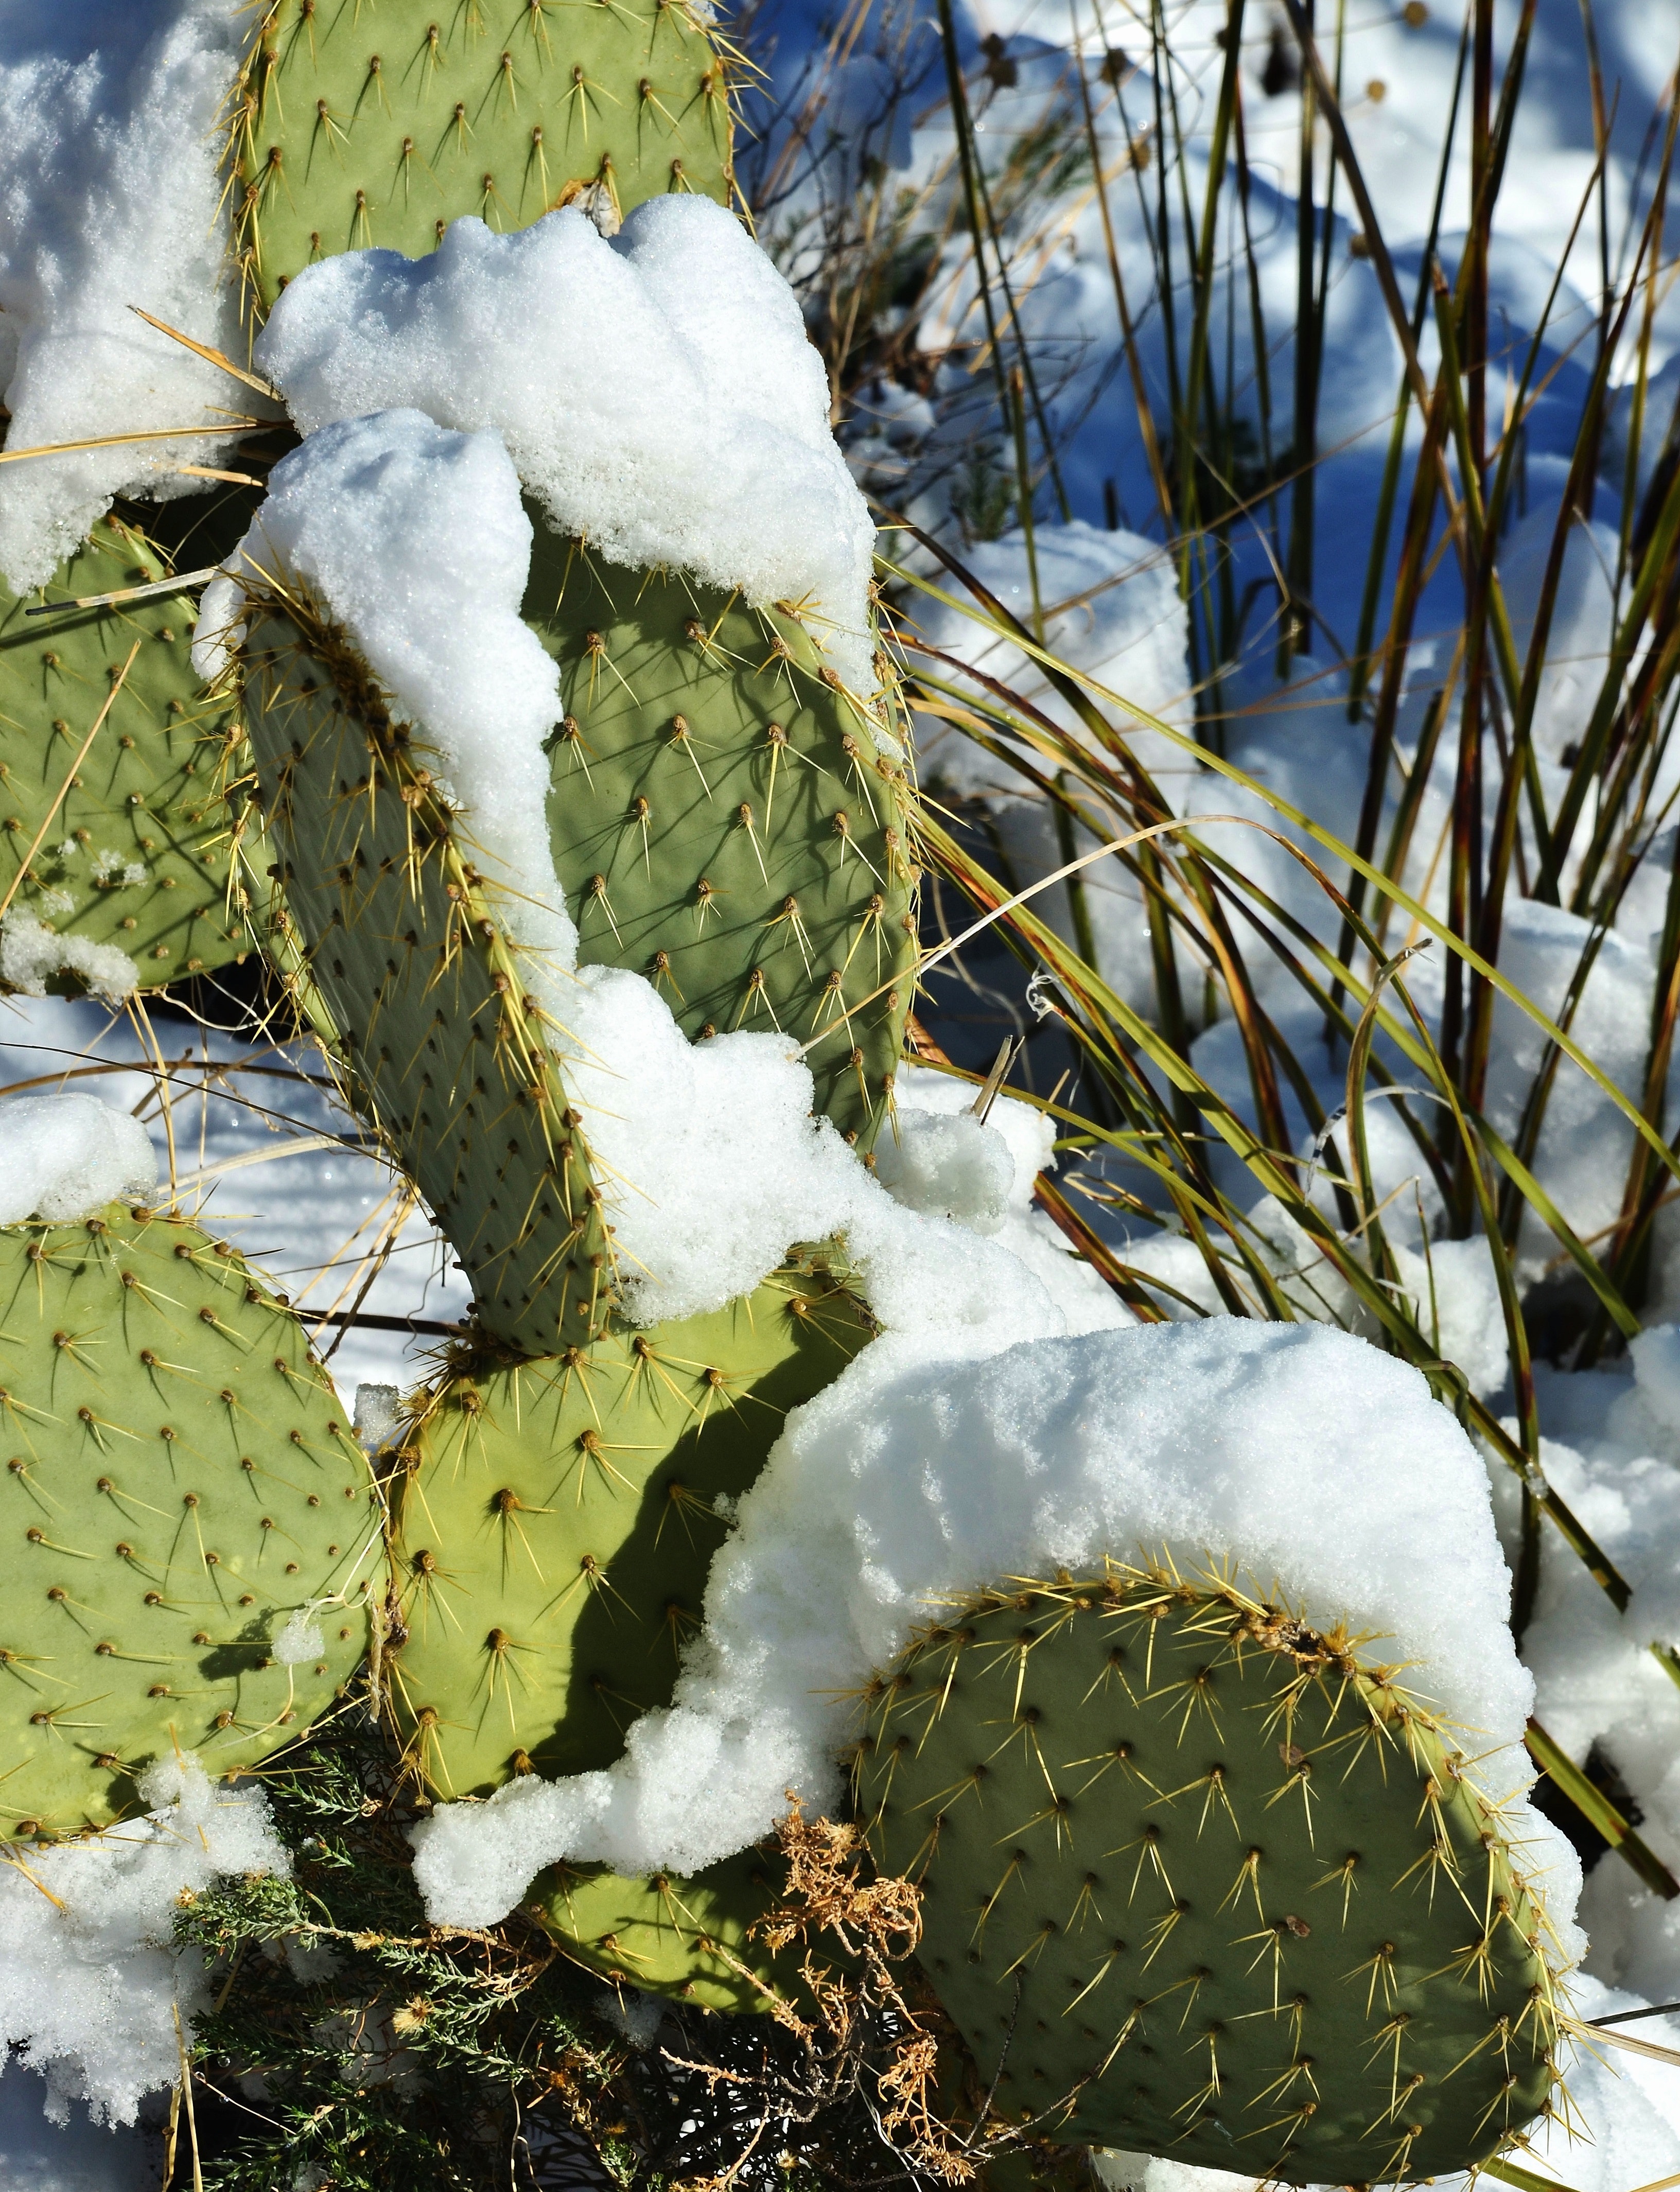 File:Cactus Snow - panoramio.jpg - Wikimedia Commons